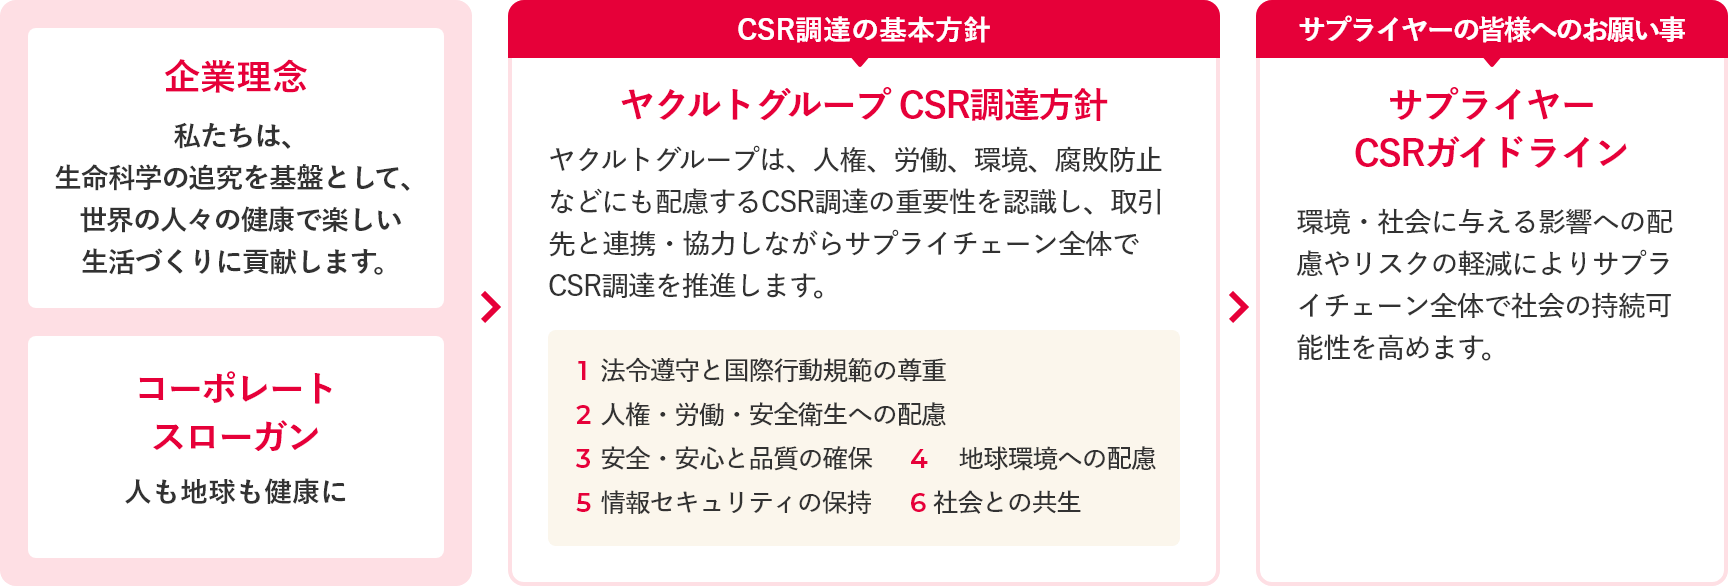 社内におけるCSR調達の意識啓発 詳細